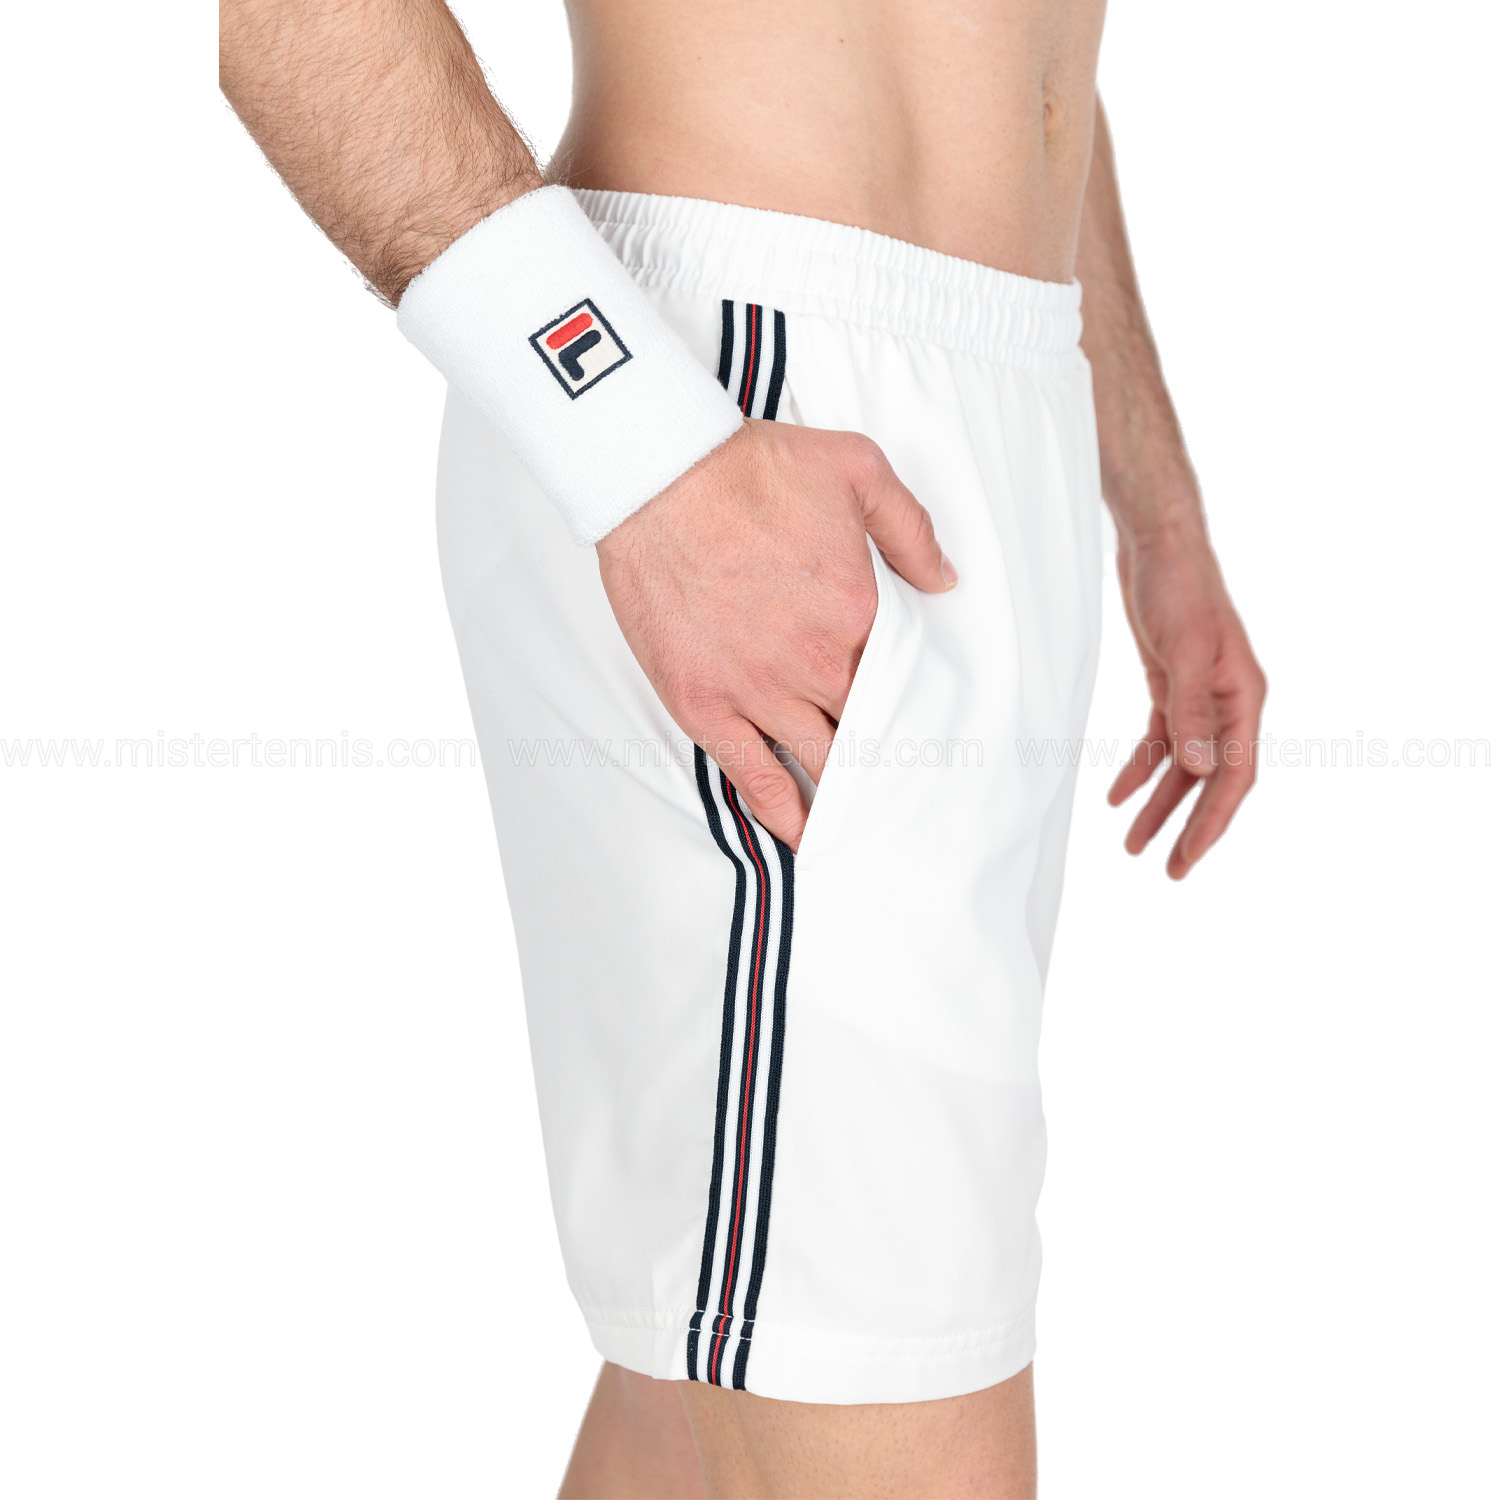 Fila Riley 7in Shorts - White